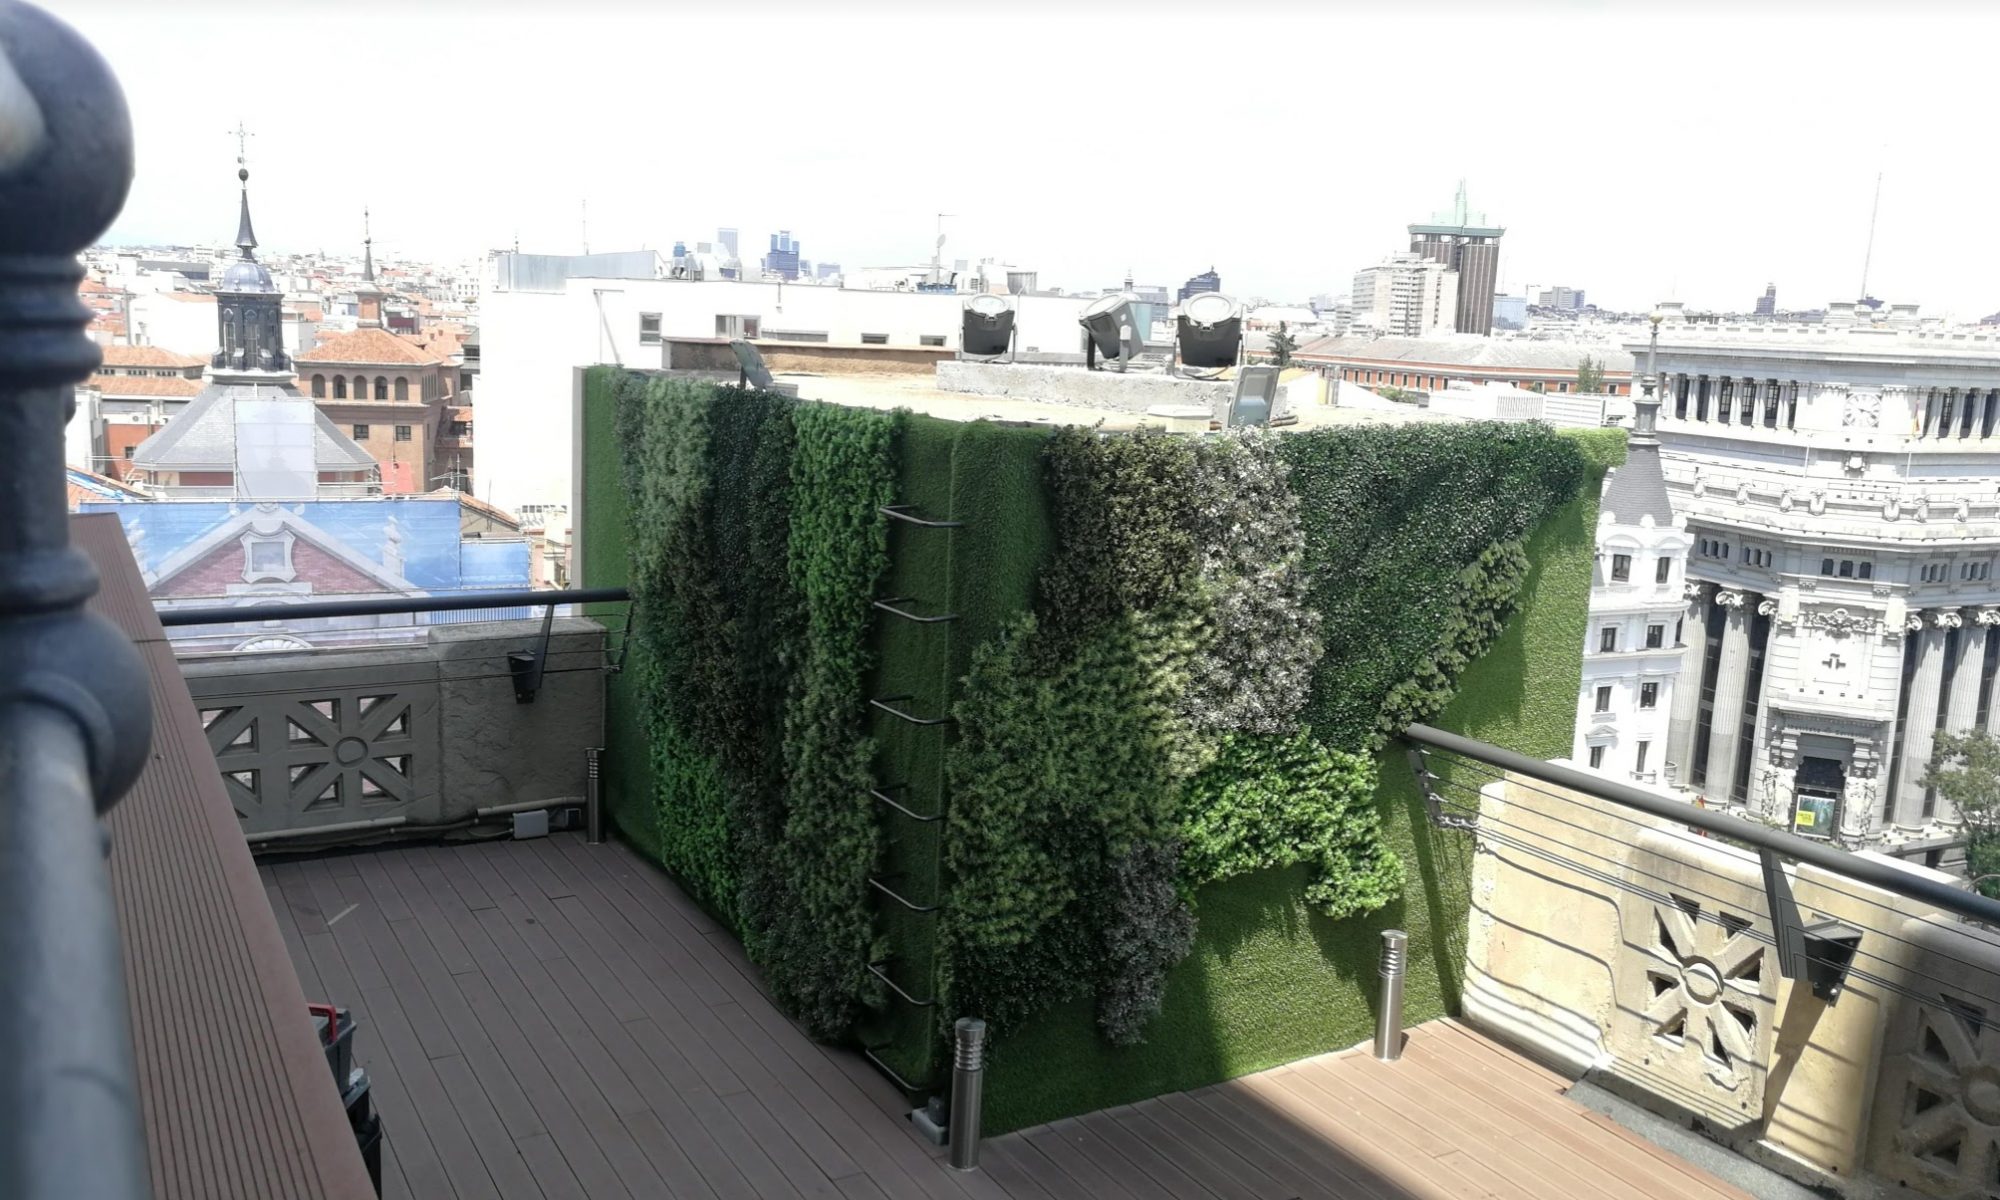 jardines verticales artificiales son una solución acertada para la decoración de terrazas y fachadas.